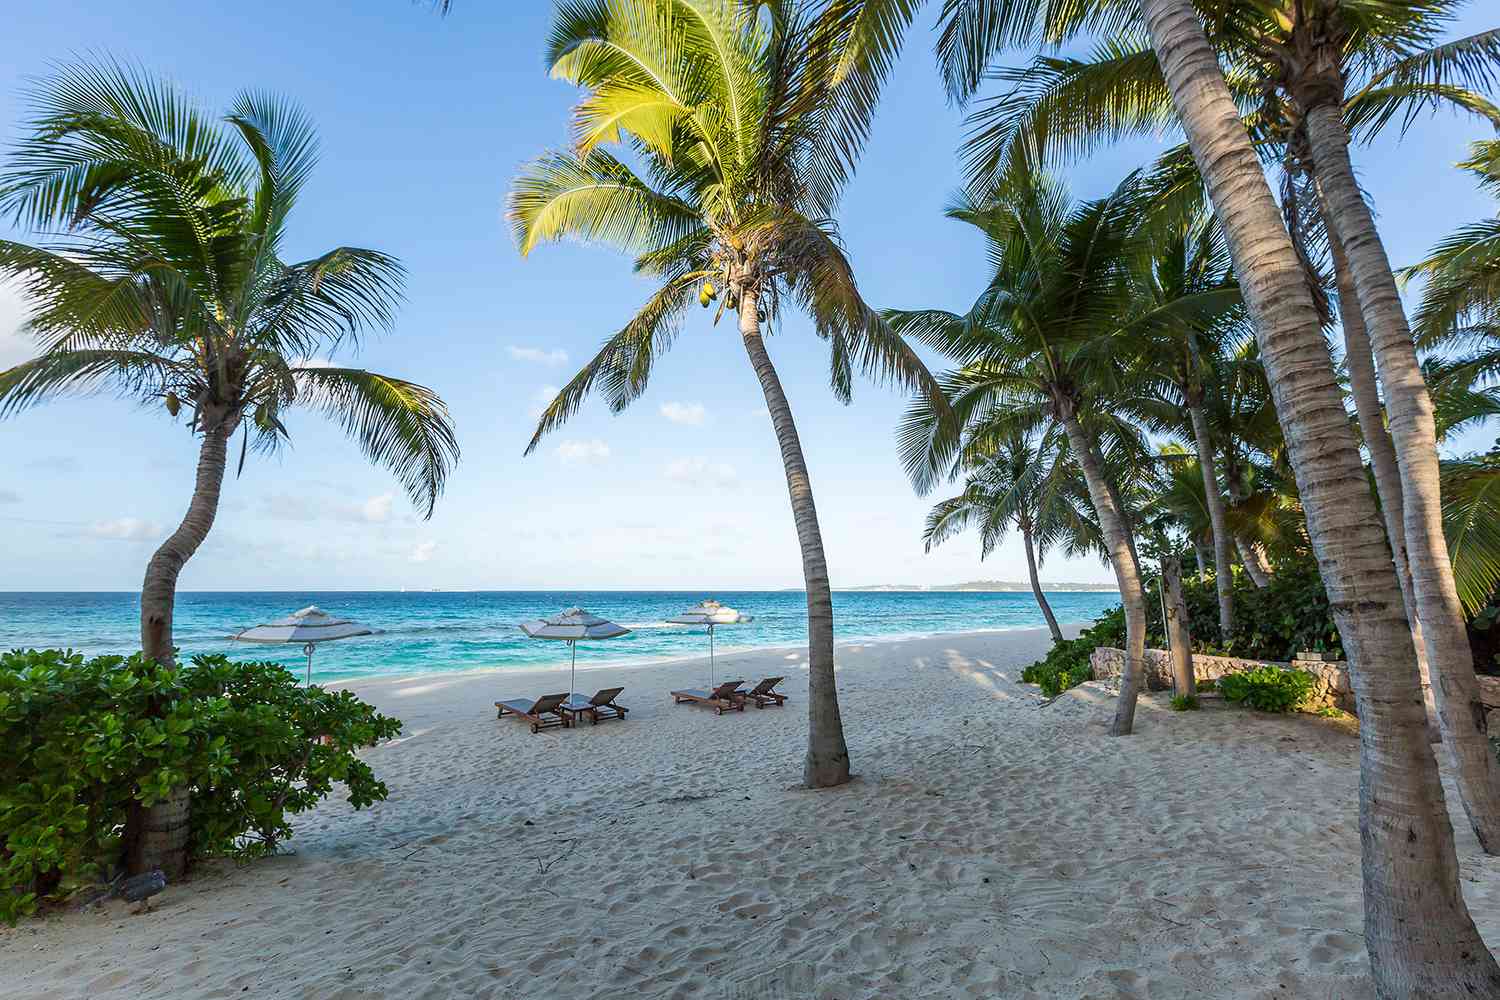 Paysage de la plage d'Anguilla dans les Caraïbes